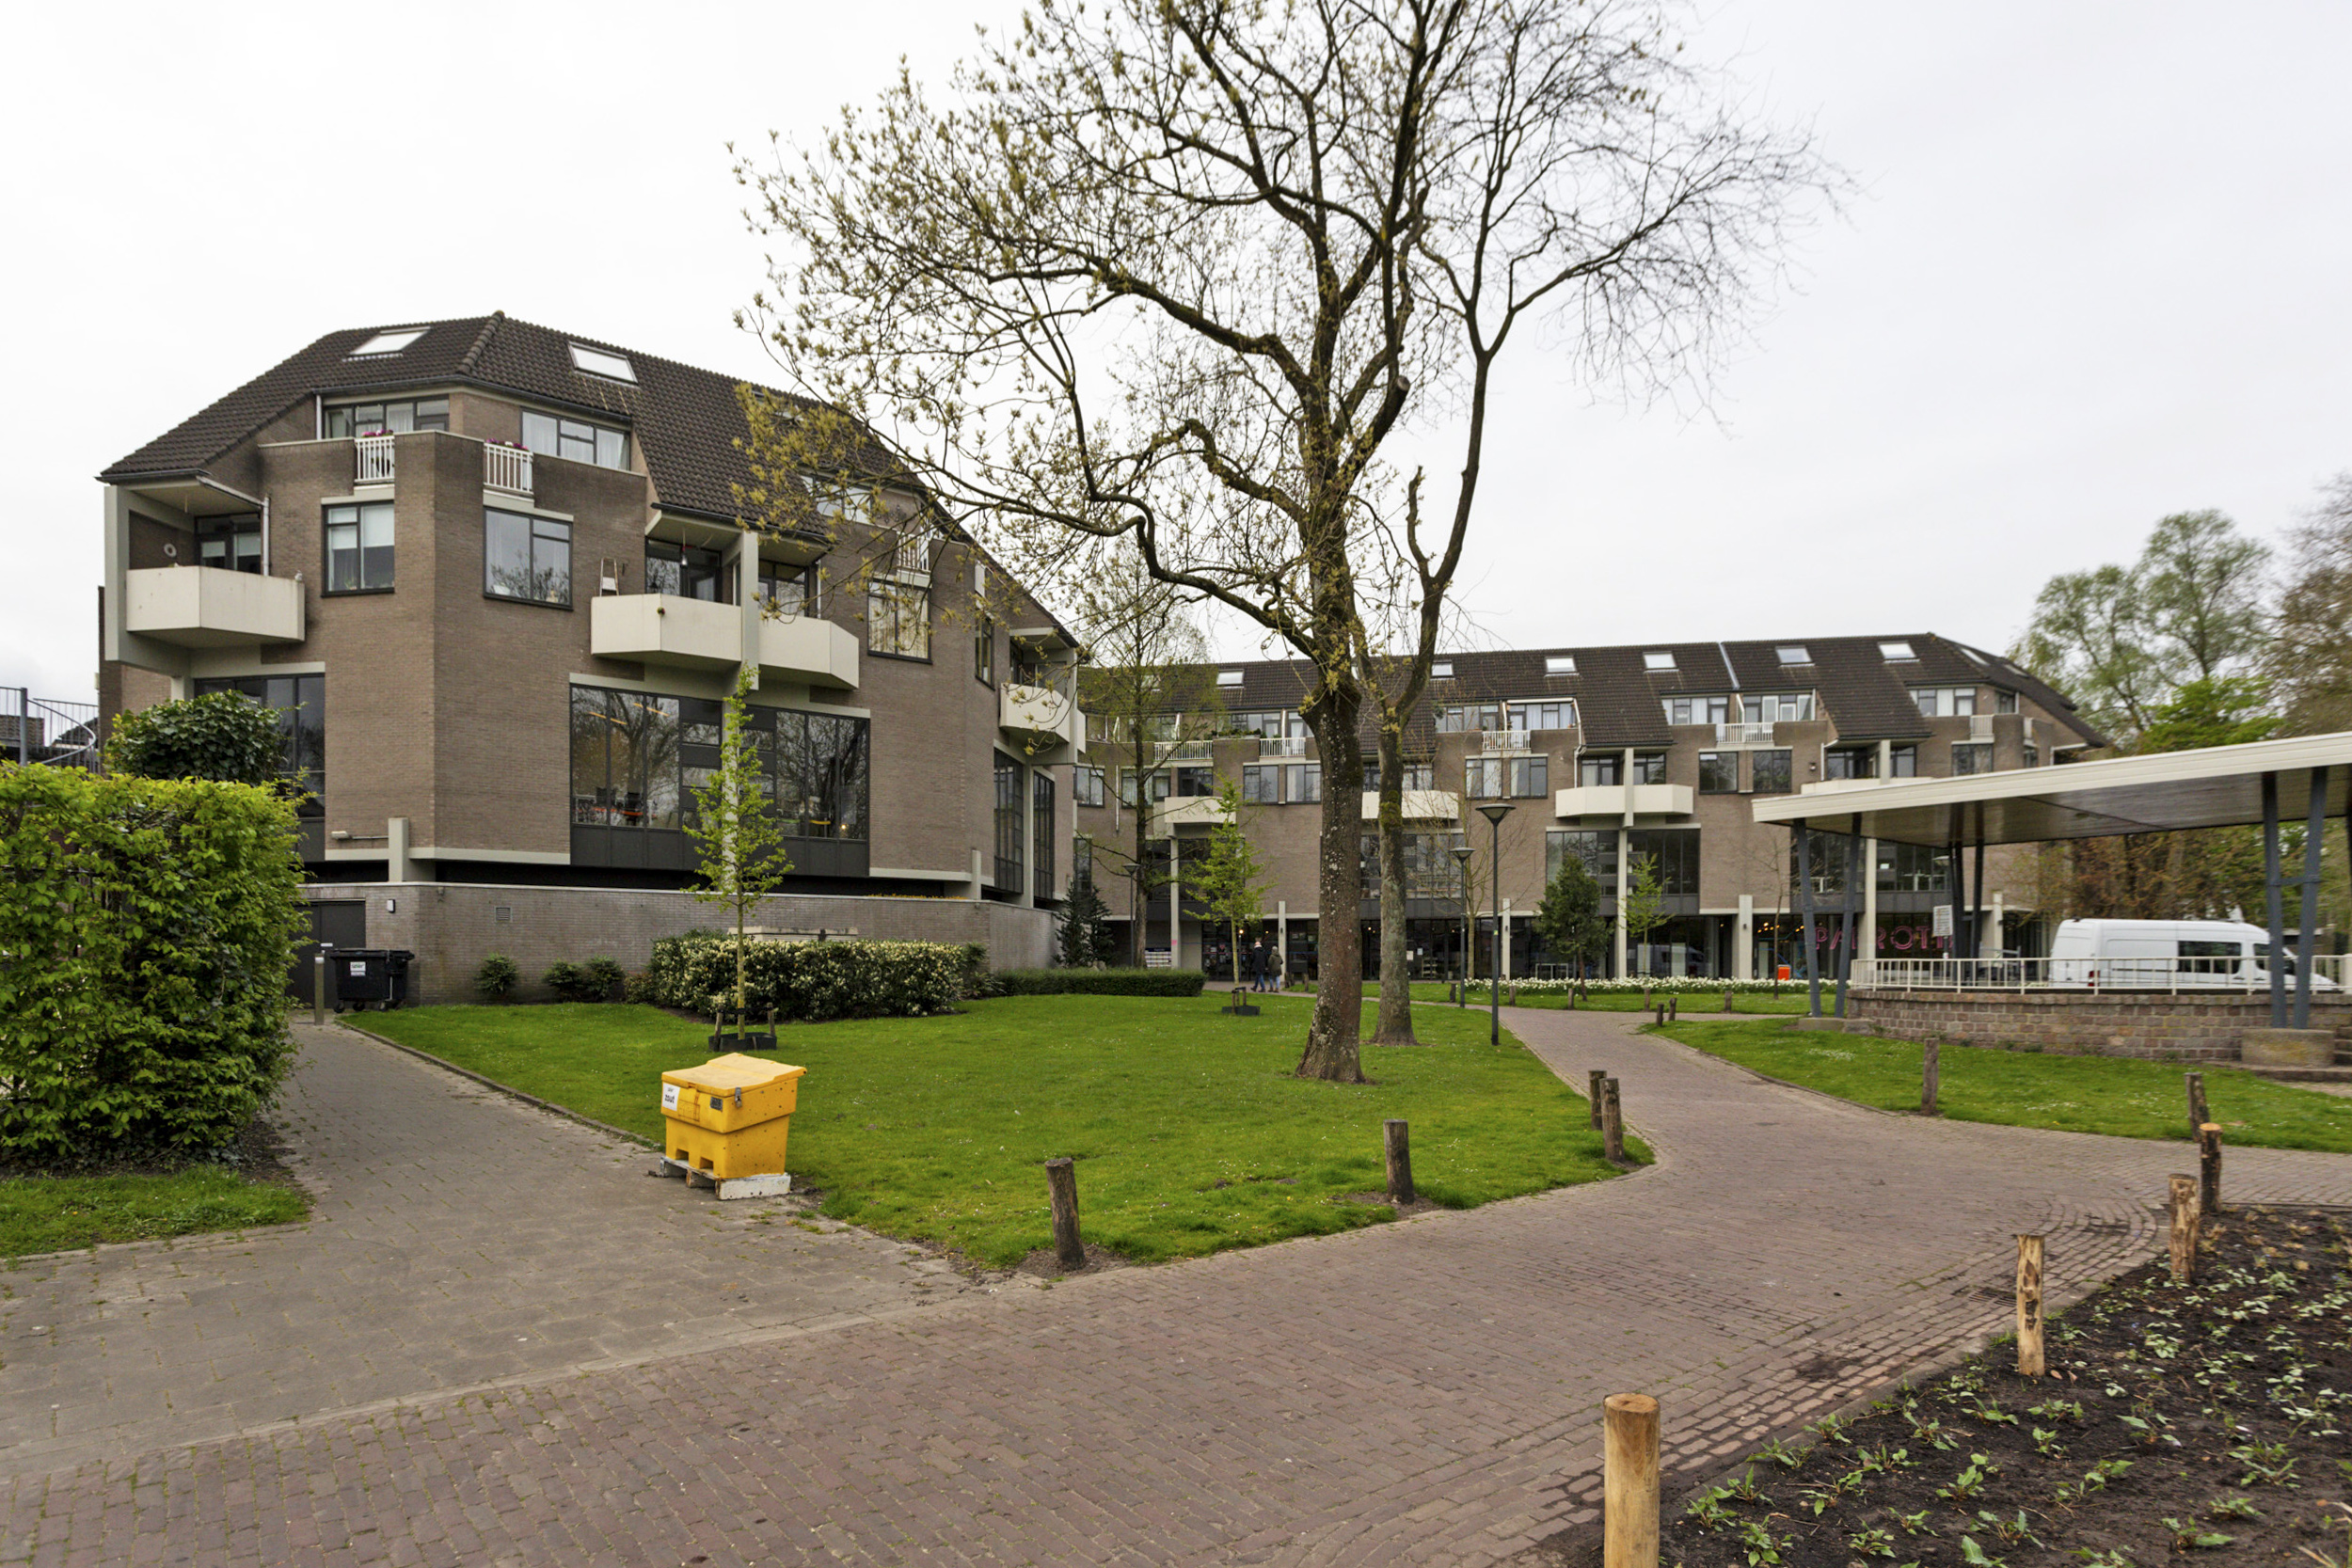 Marktstede 40, 4701 PX Roosendaal, Nederland